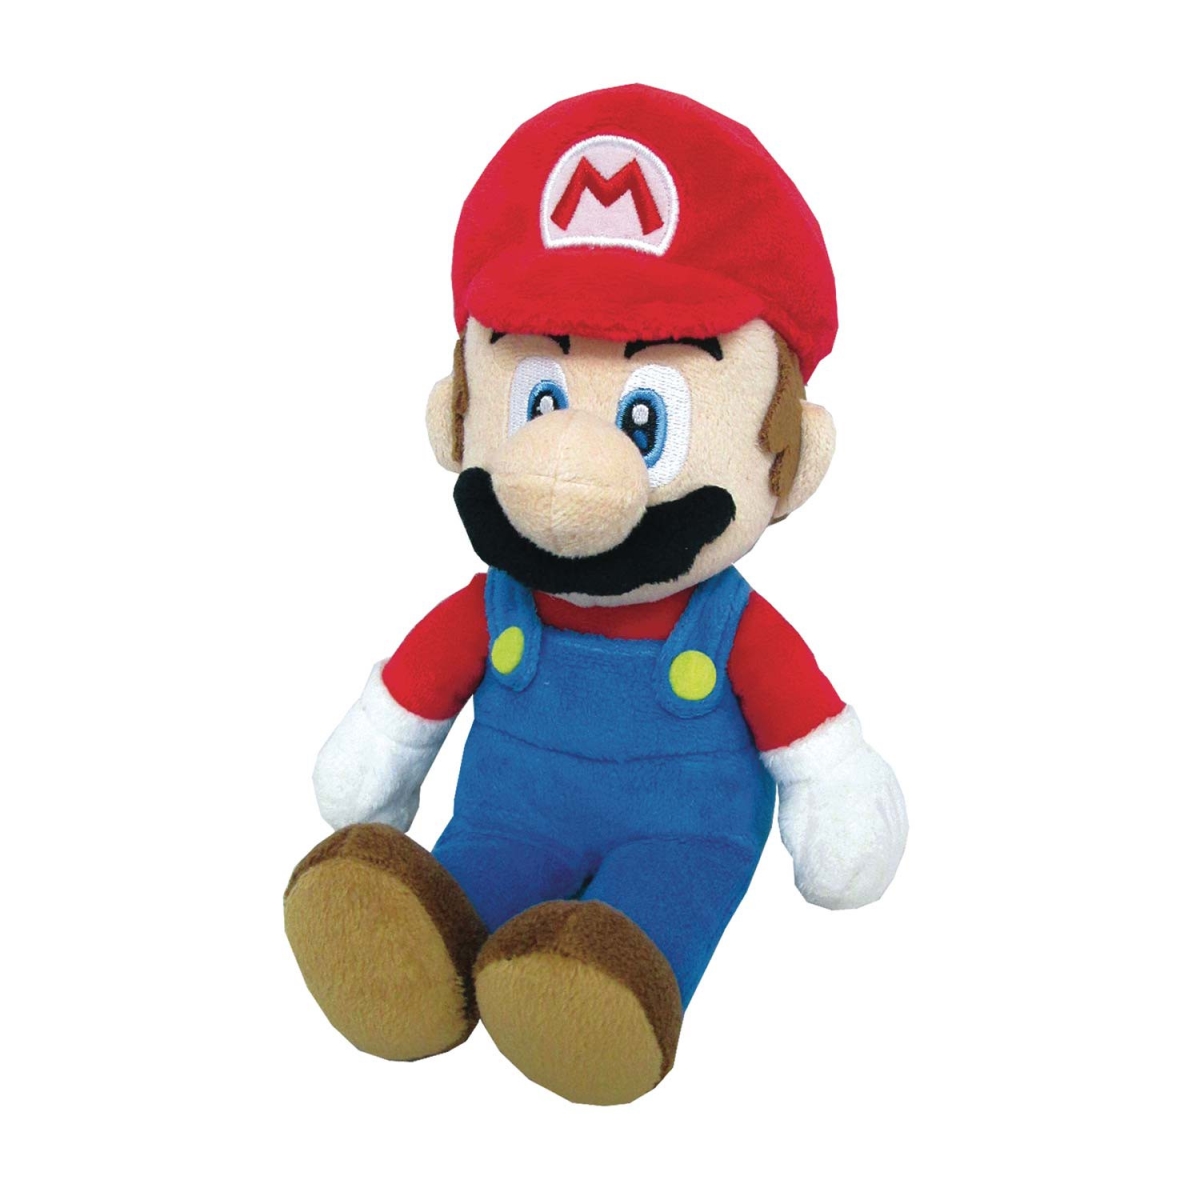 Picture of Super Mario Bros 46186 Super Mario Bros Plush Toy - 10 in.